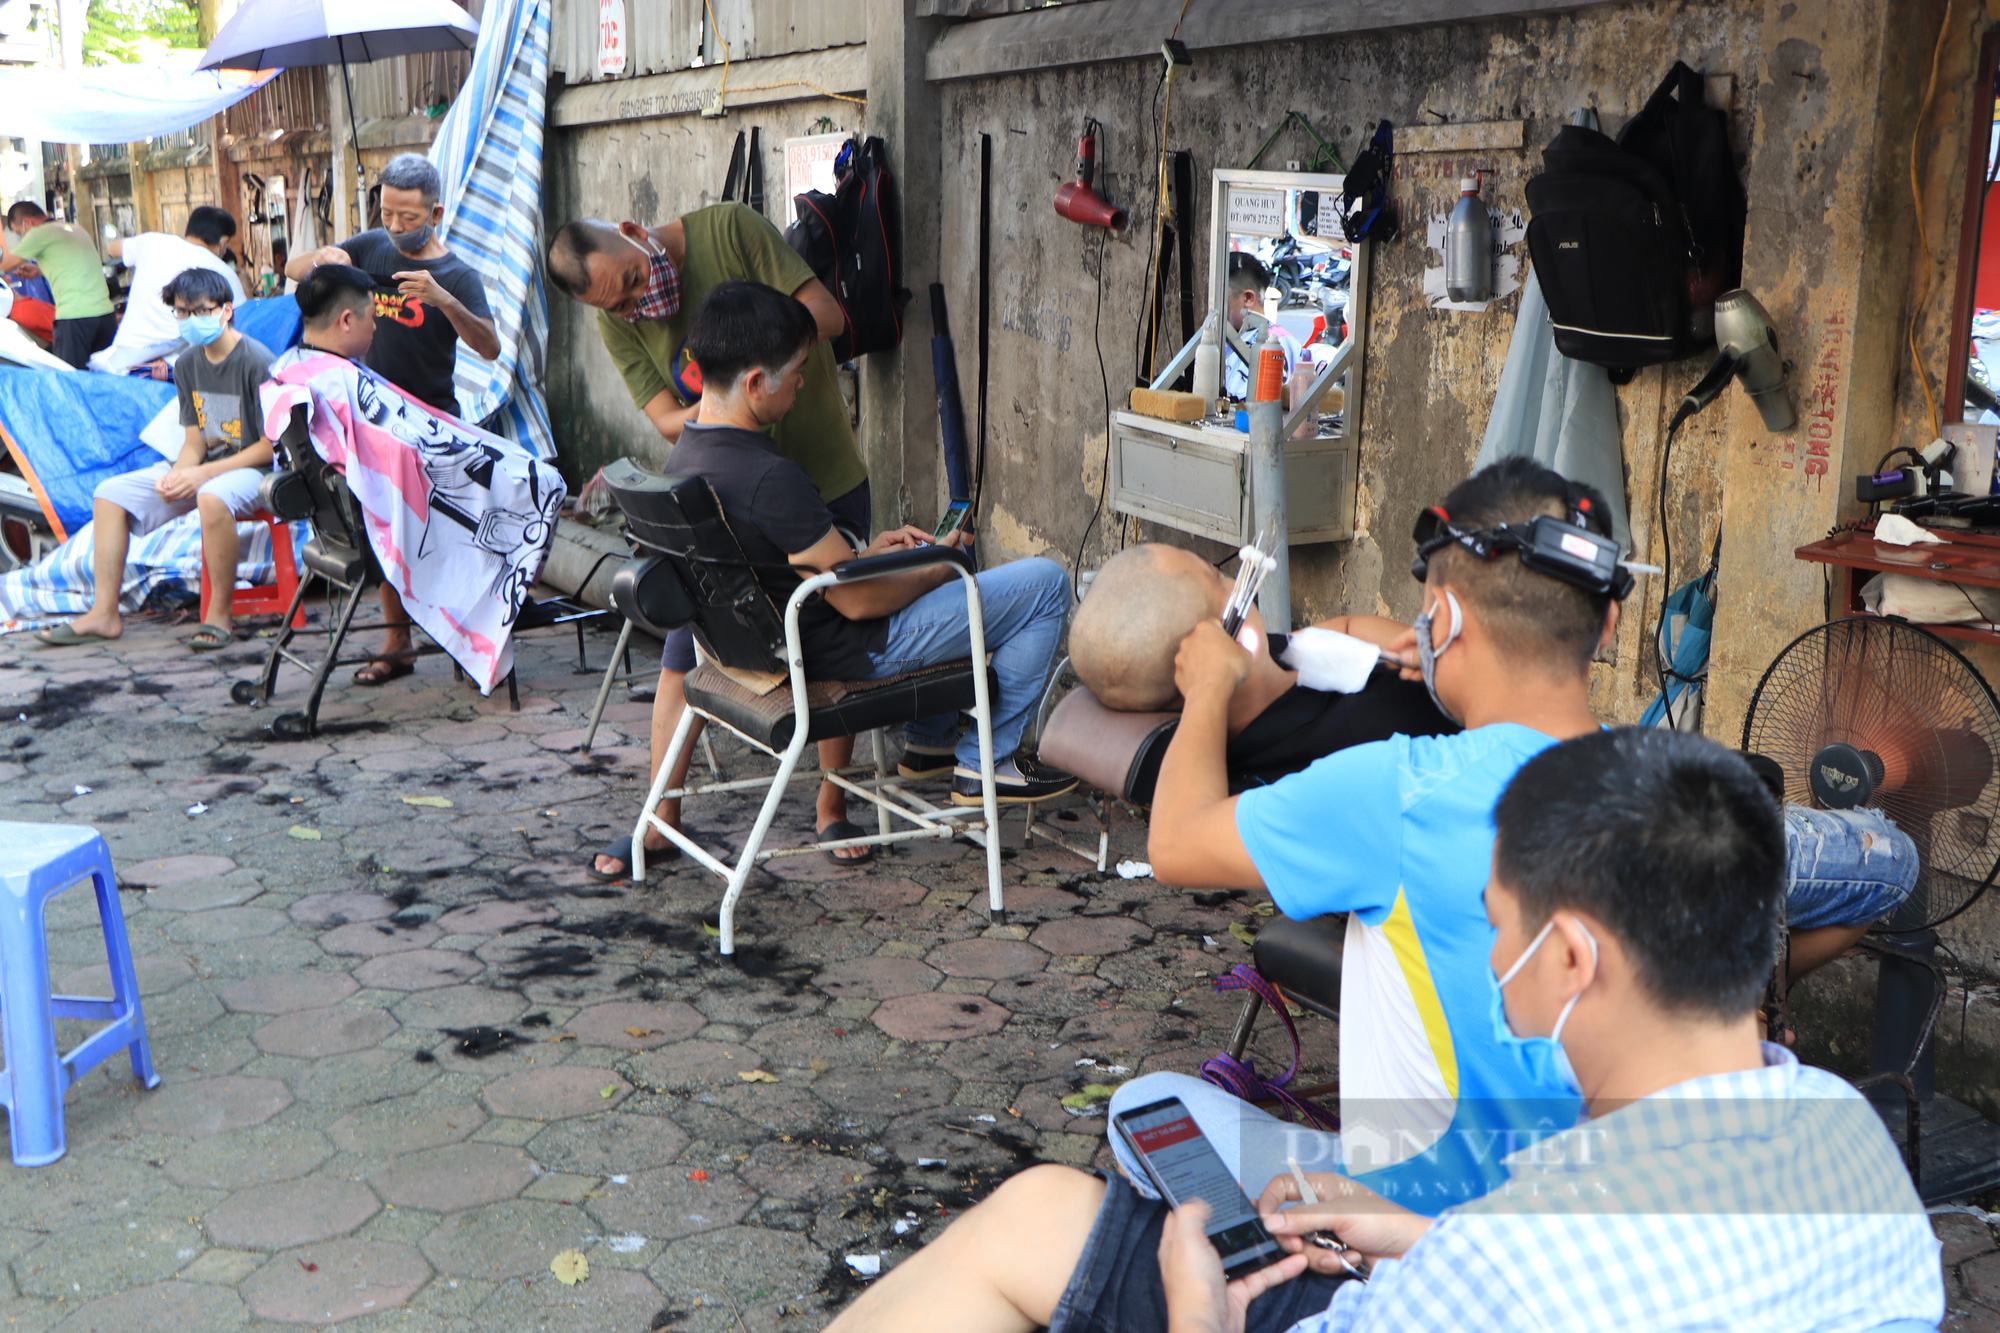 Cả ngày &quot;ngồi chơi xơi nước&quot;, đến chiều quán cắt tóc ở Hà Nội làm không kịp trở tay trước lệnh dừng hoạt động - Ảnh 3.